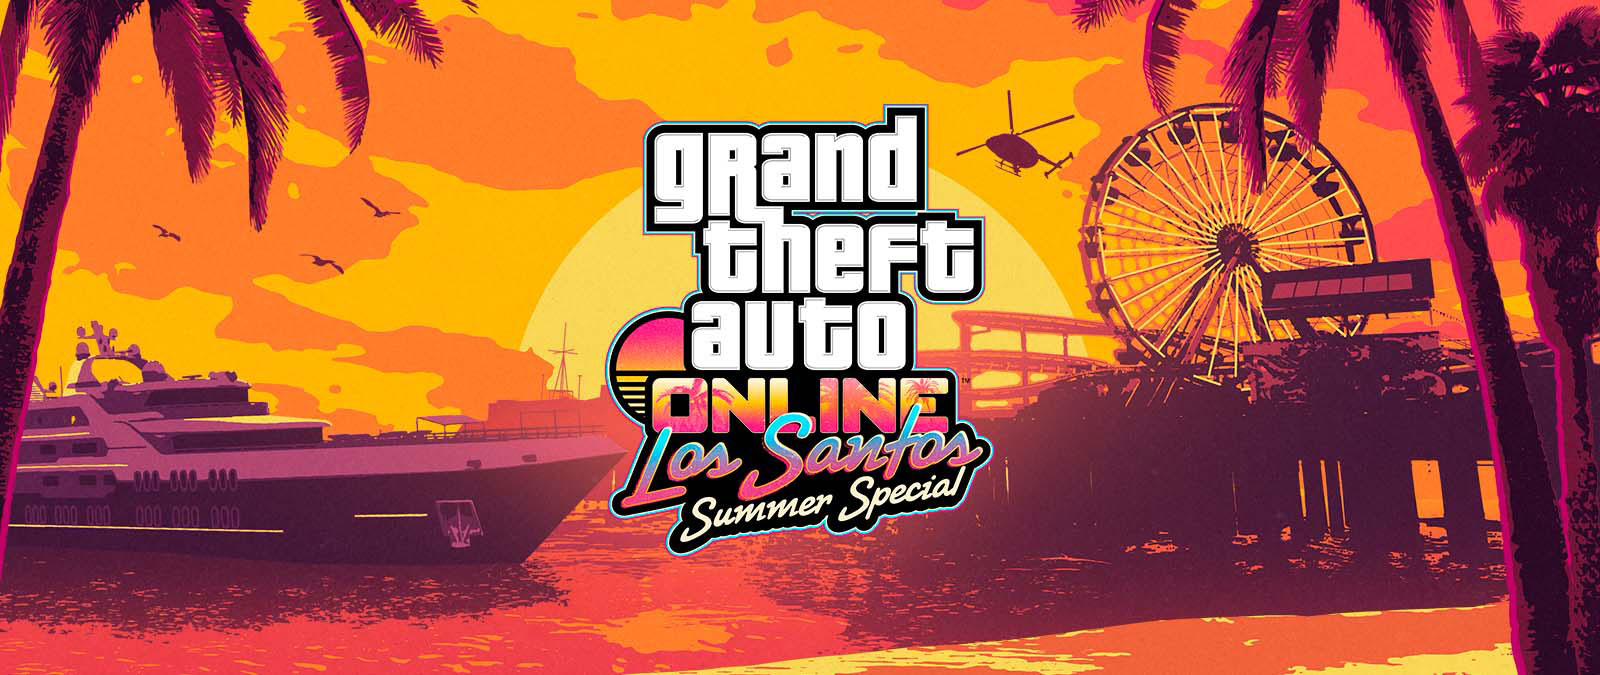 Grand Theft Auto Online. Letní speciál Los Santos. Jachta, Ruské kolo a vrtulník při západu slunce